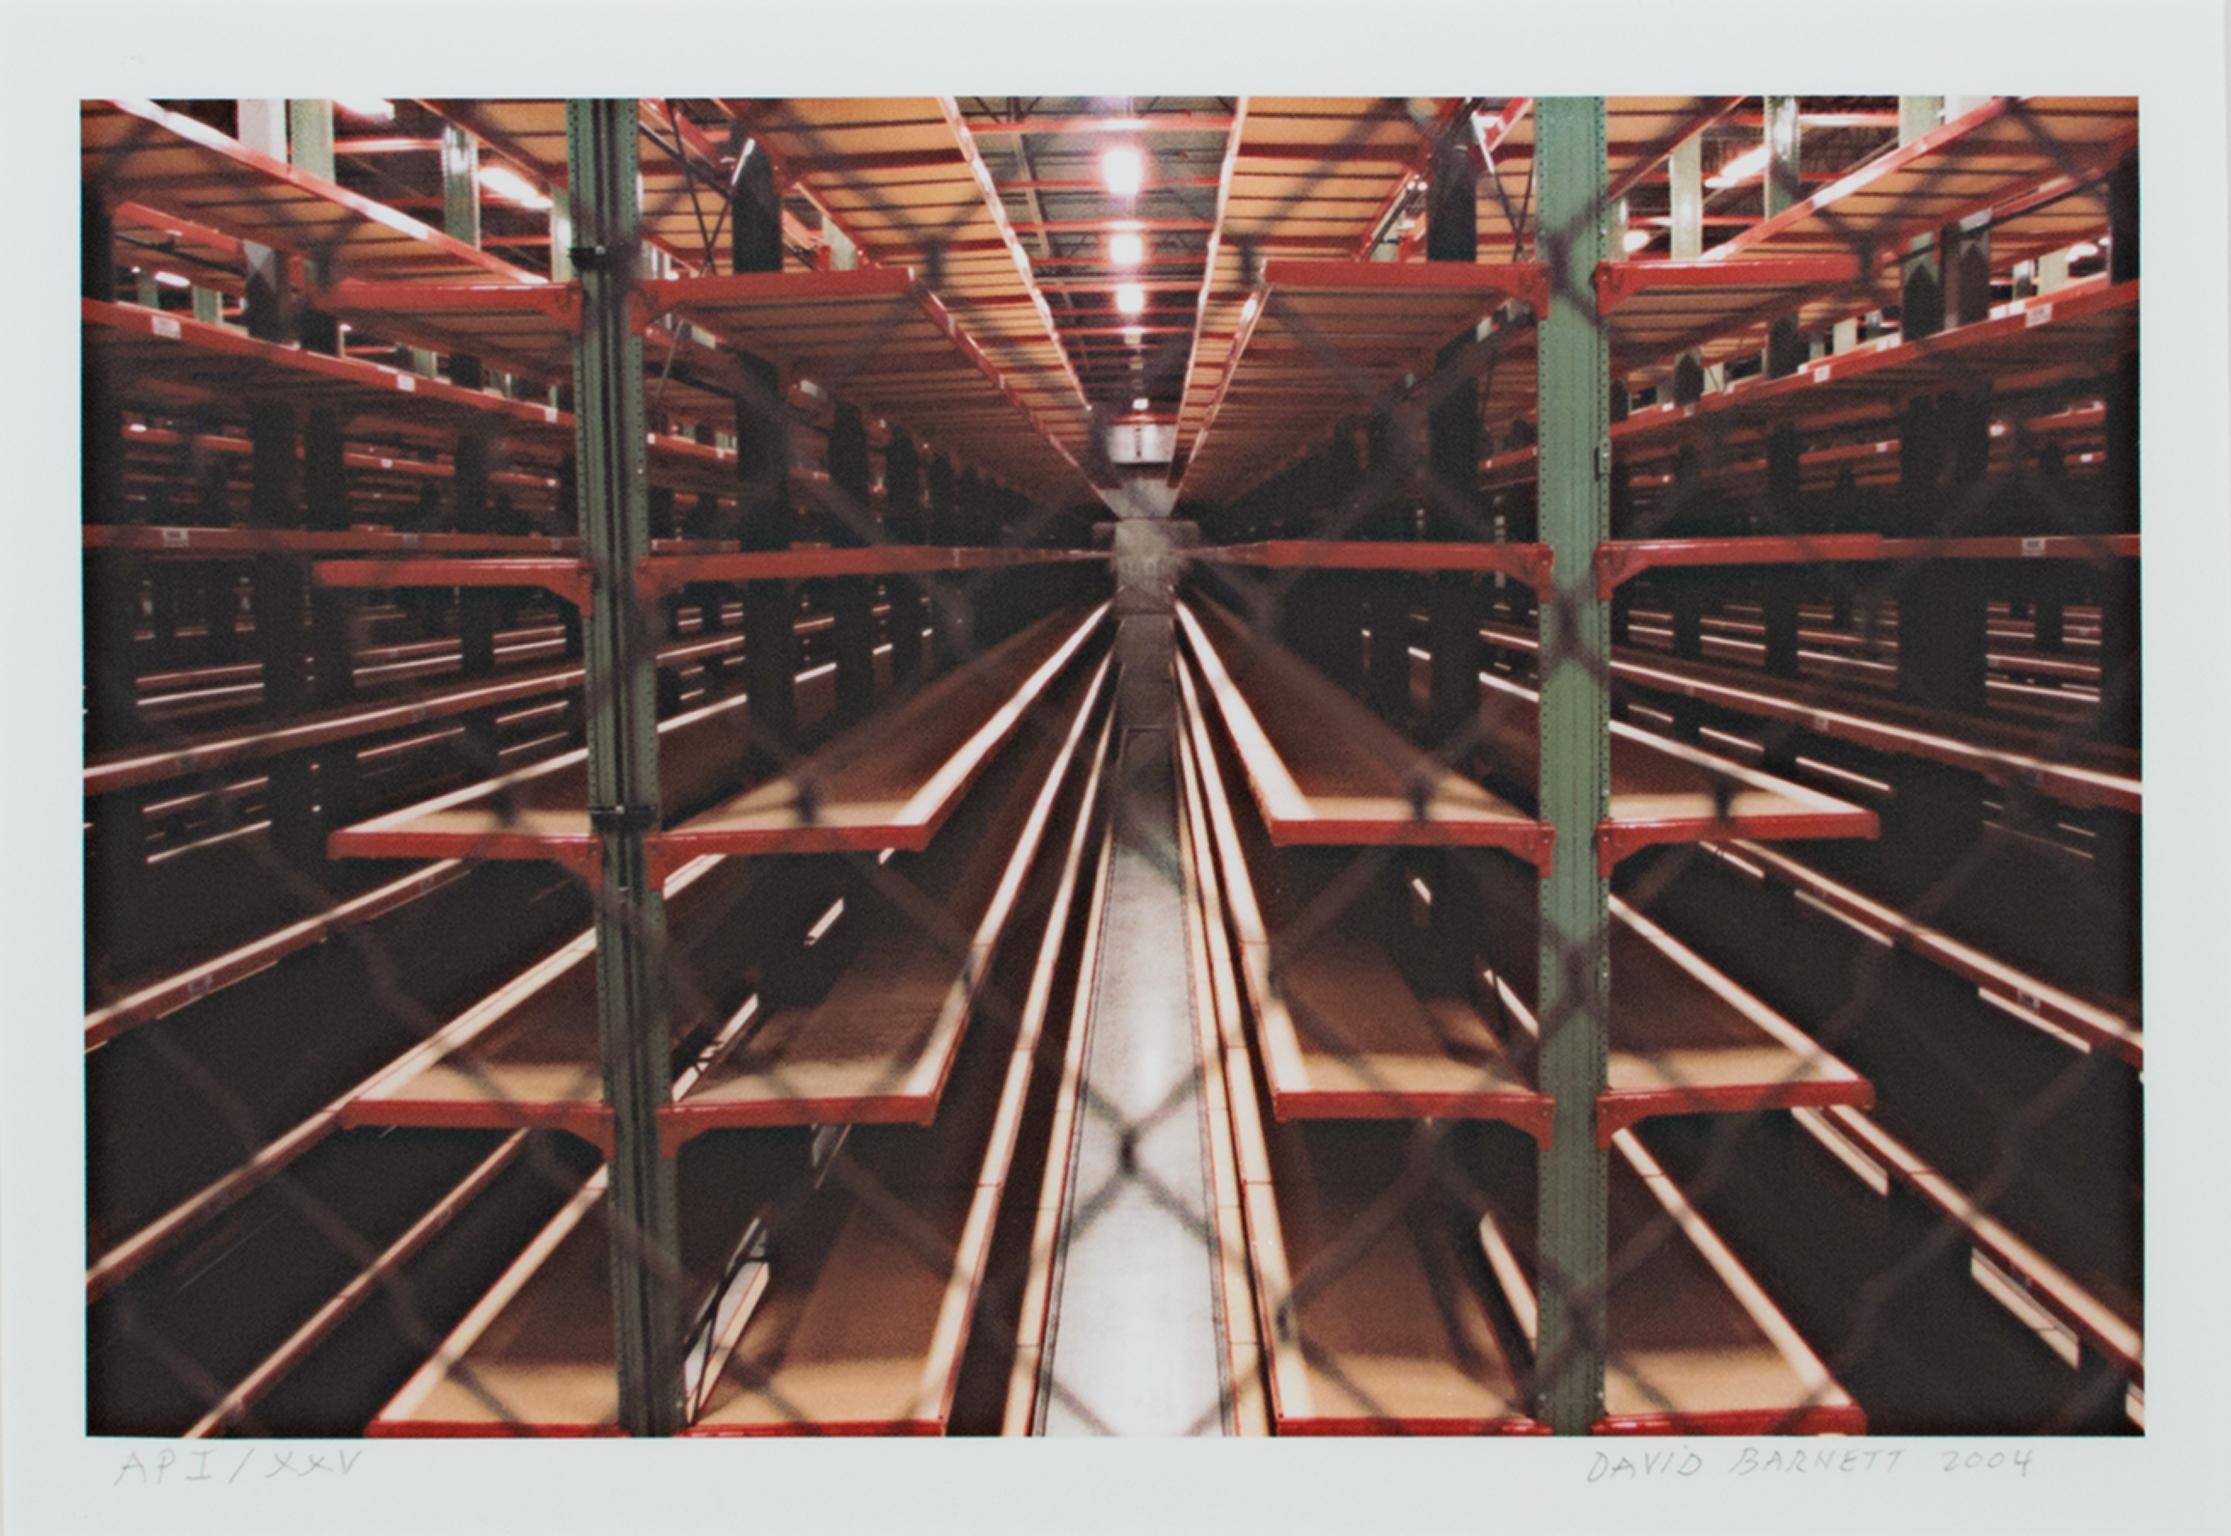 ""Steinhafel's Warehouse Series Steel Forest Fenced", Photographie de David Barnett